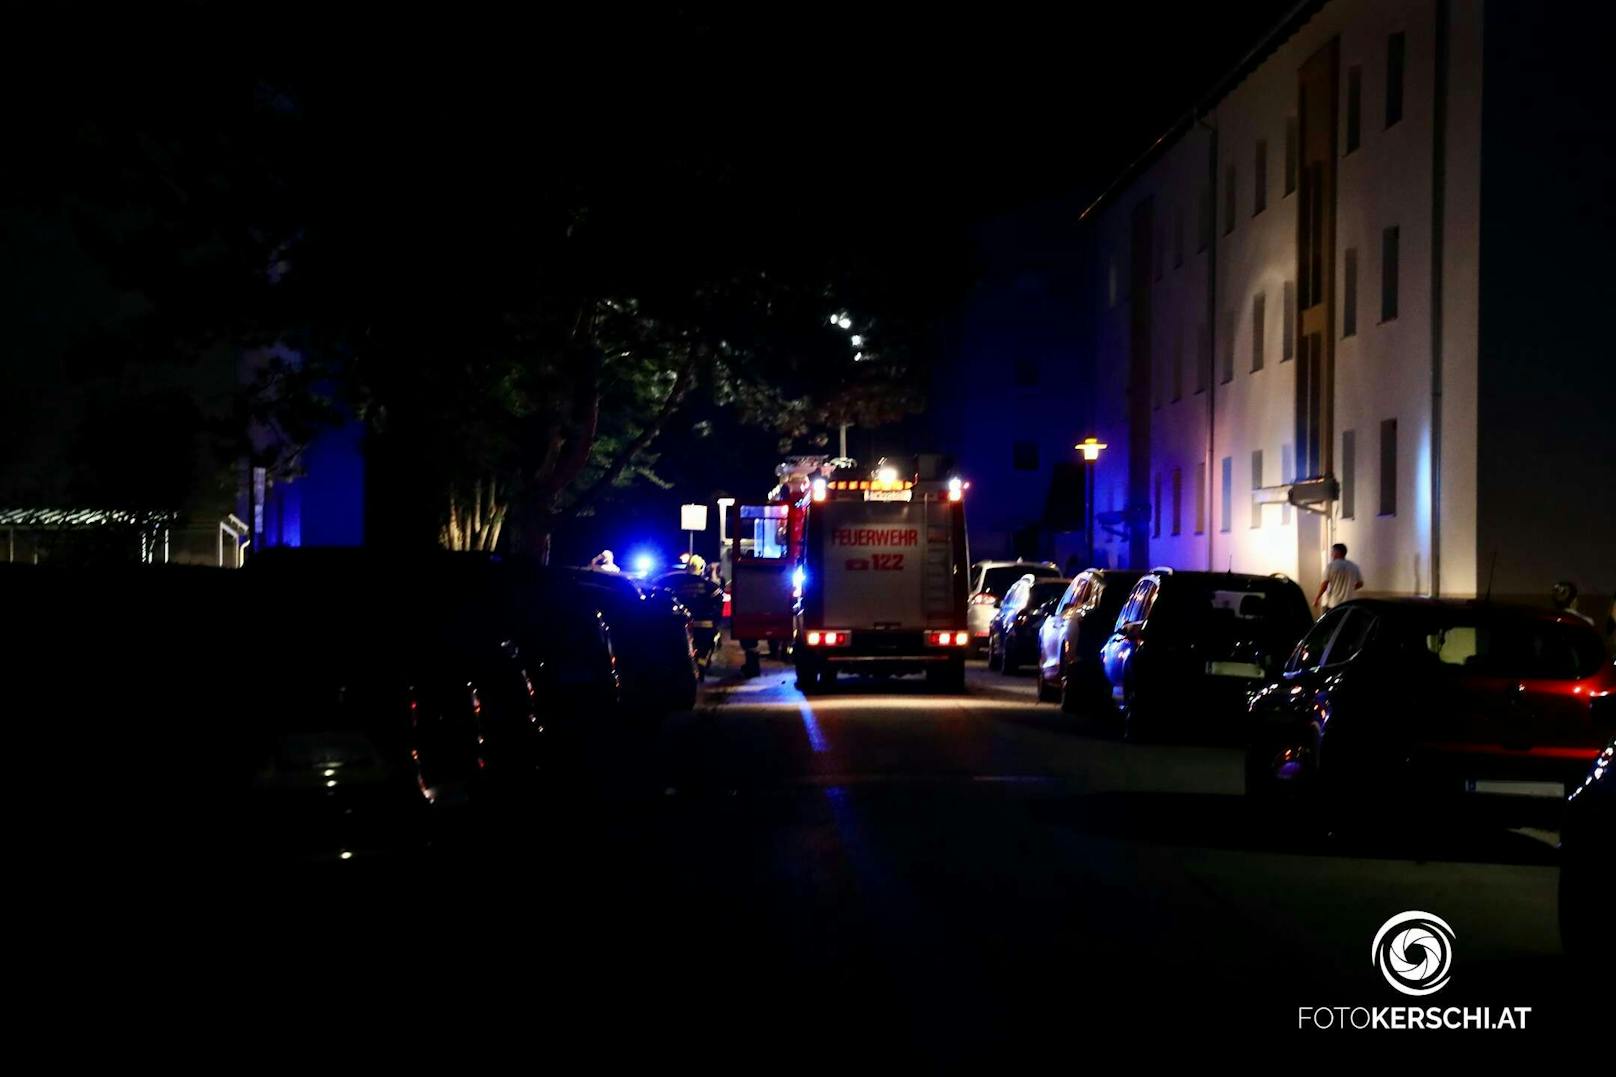 Ein bislang unbekannter Täter legte am 1. August zwischen 13:10 Uhr und 21:10 Uhr in der Keplerstraße 1 insgesamt fünf Mal ein Feuer. Die Polizei bittet um Hinweise.